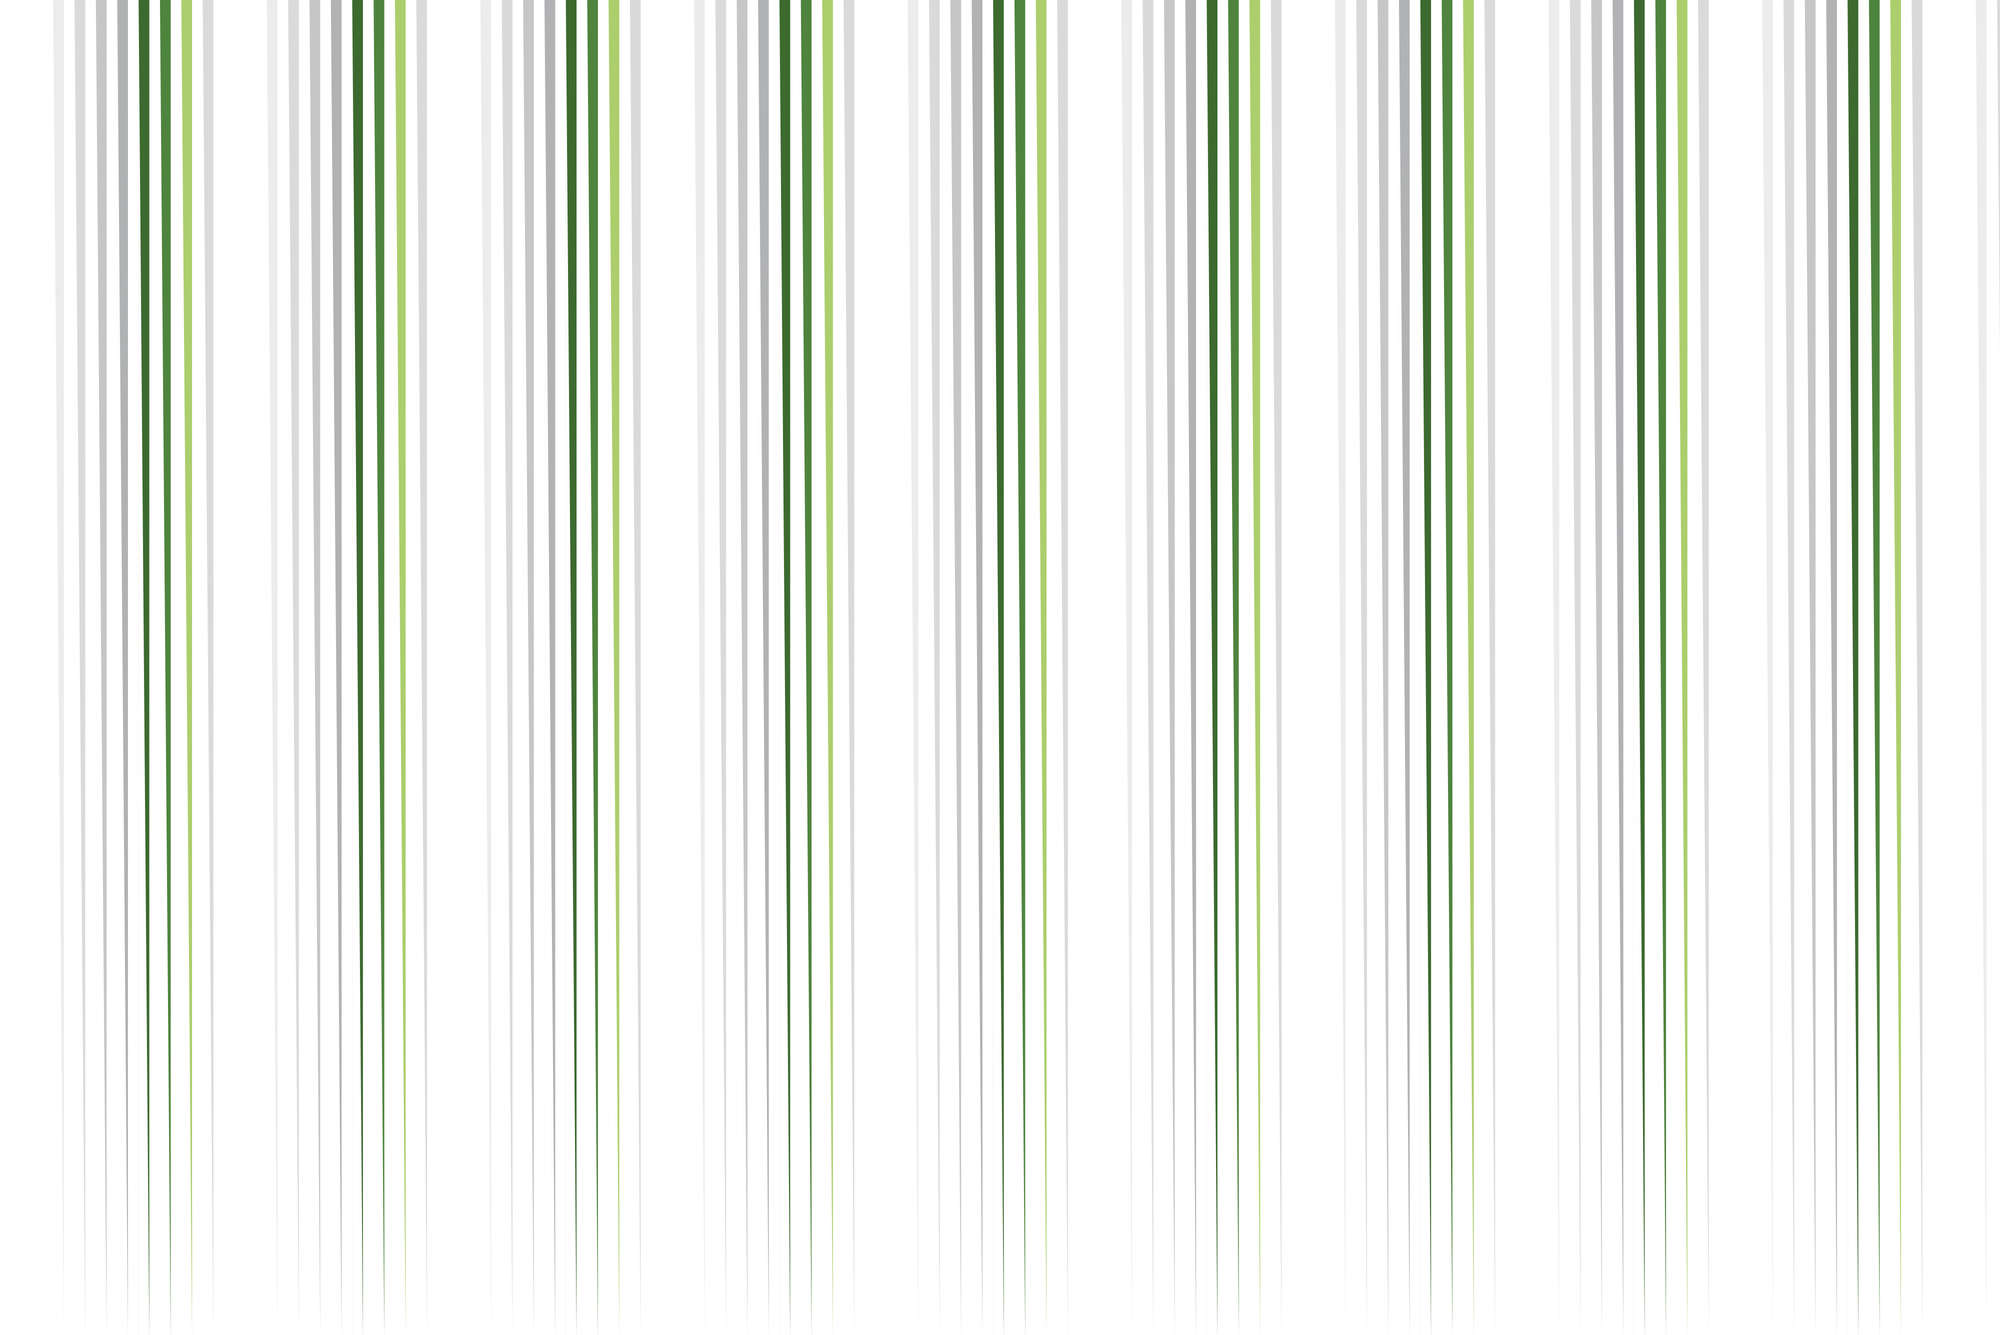             Designbehang dunne strepen wit groen op mat glad vlies
        